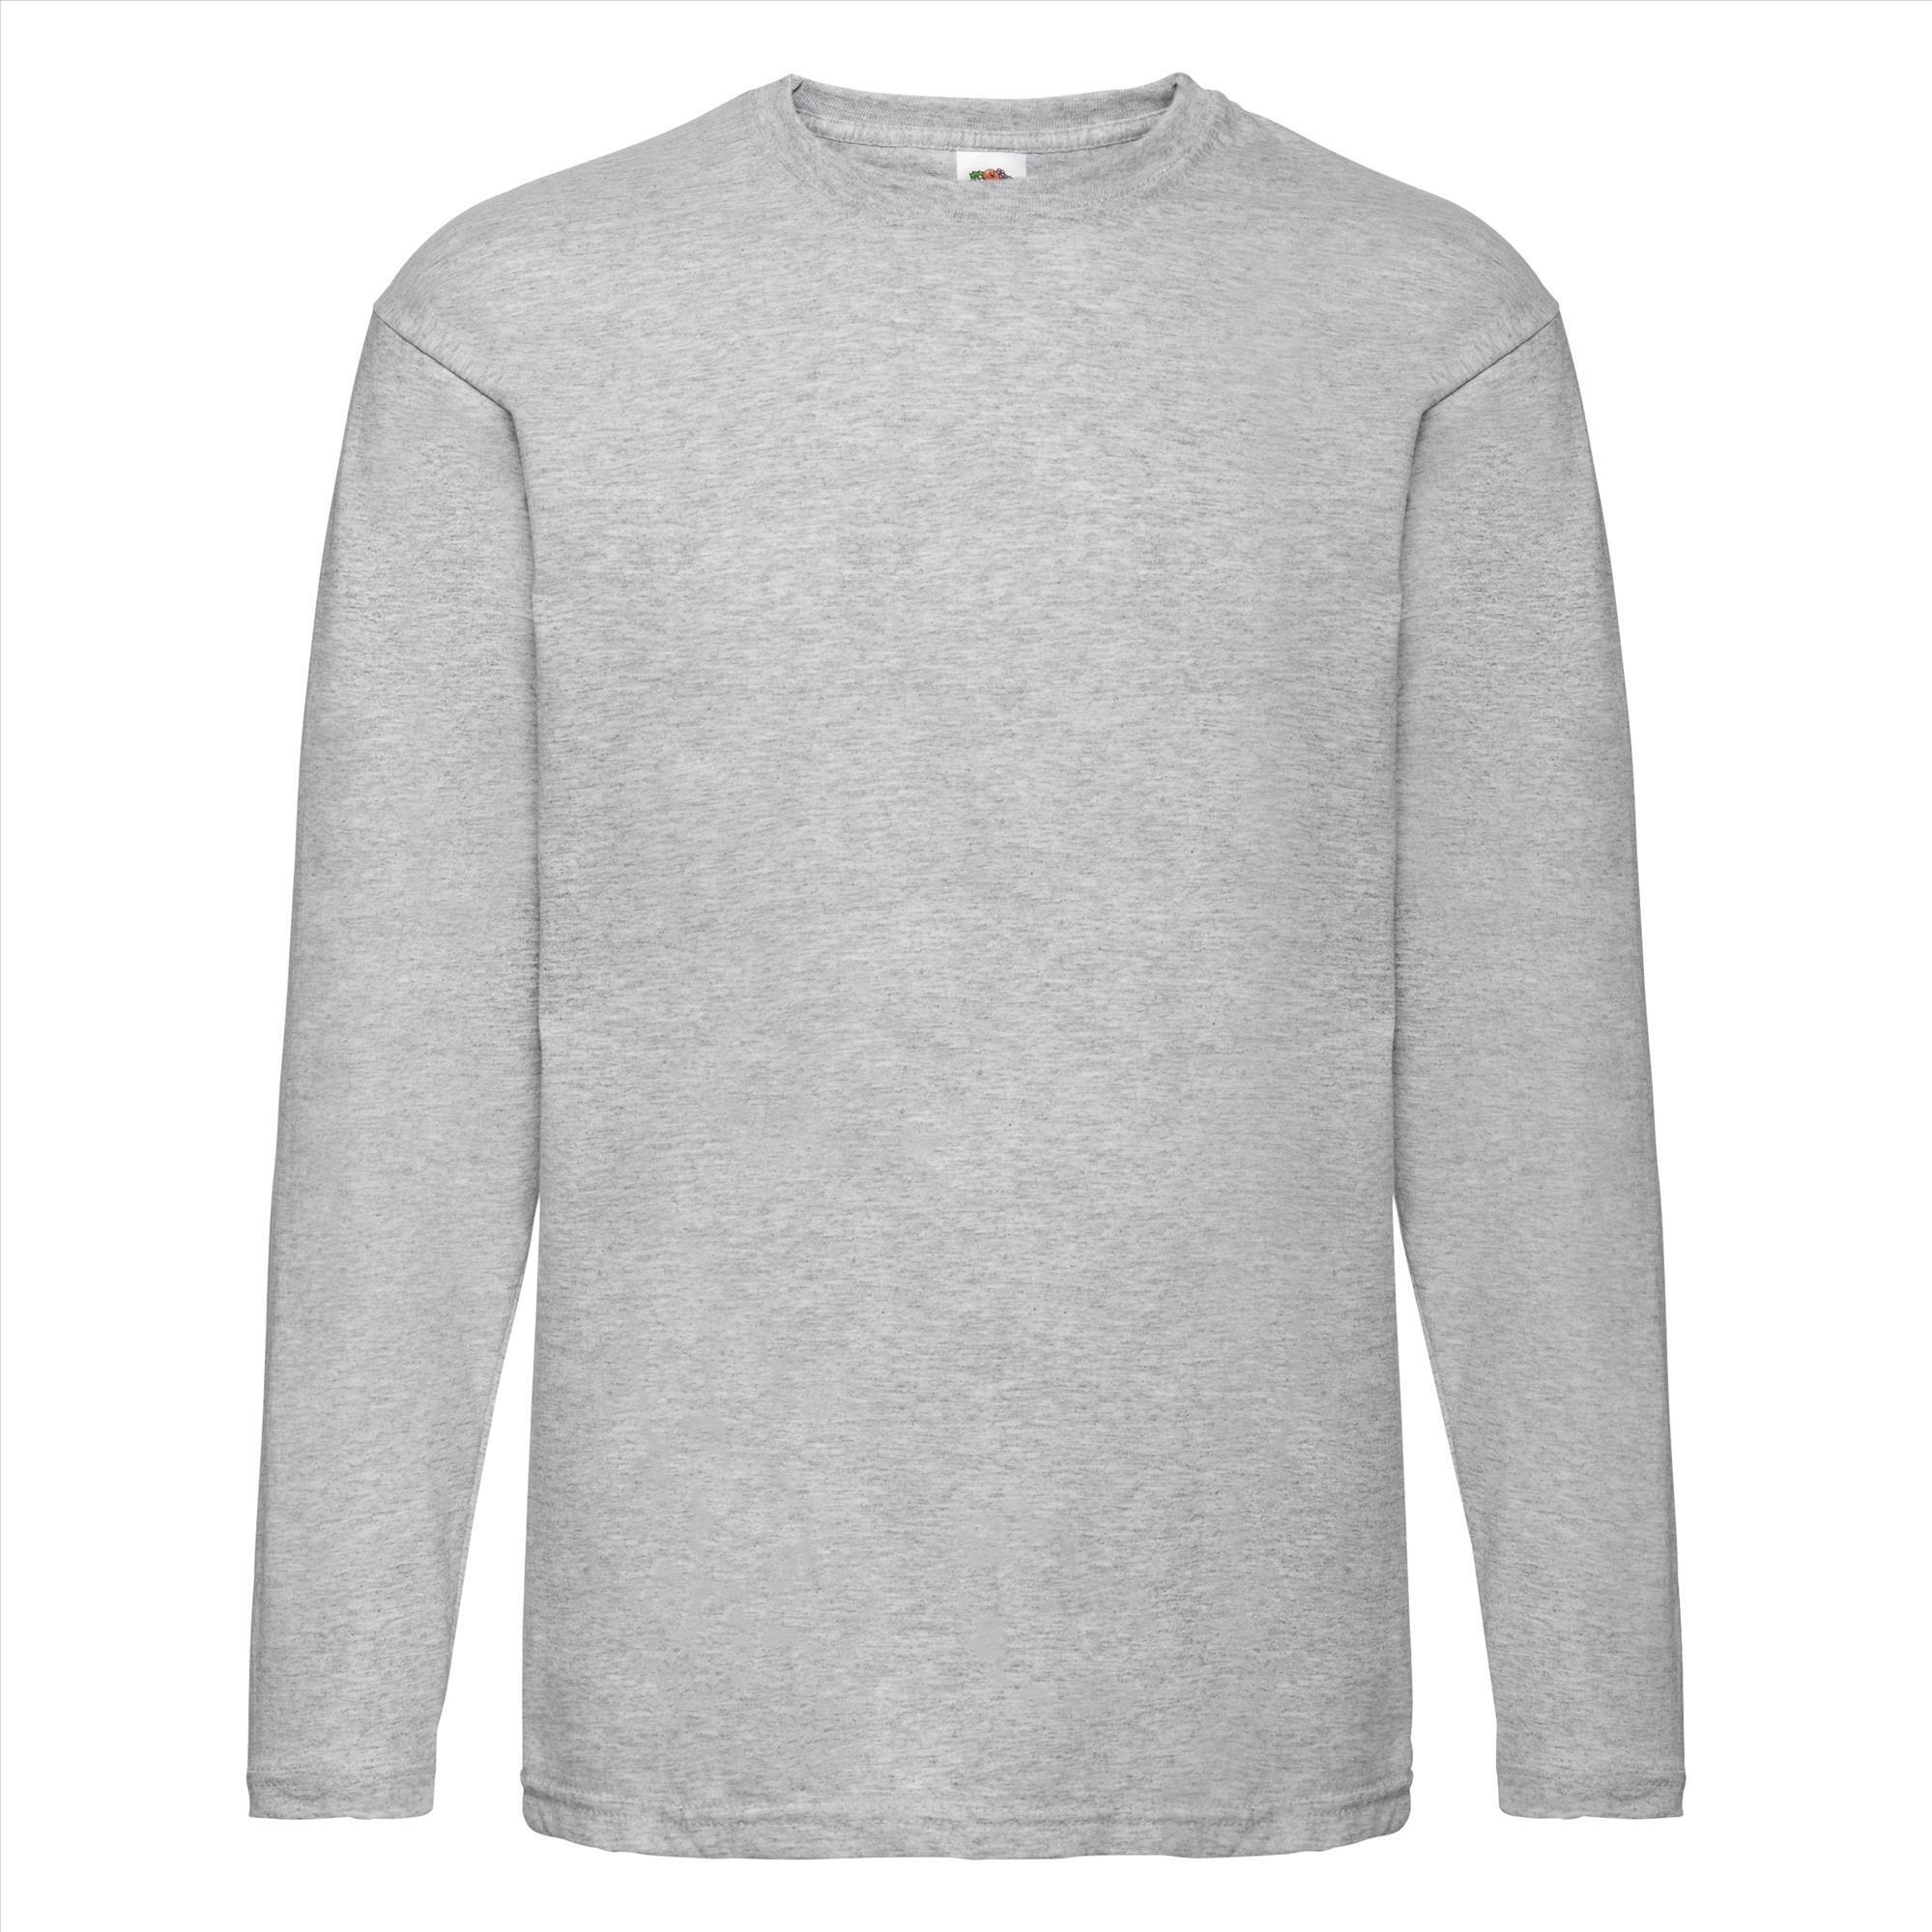 T-shirt heide grijs lange mouwen voor mannen bedrukbaar te personaliseren